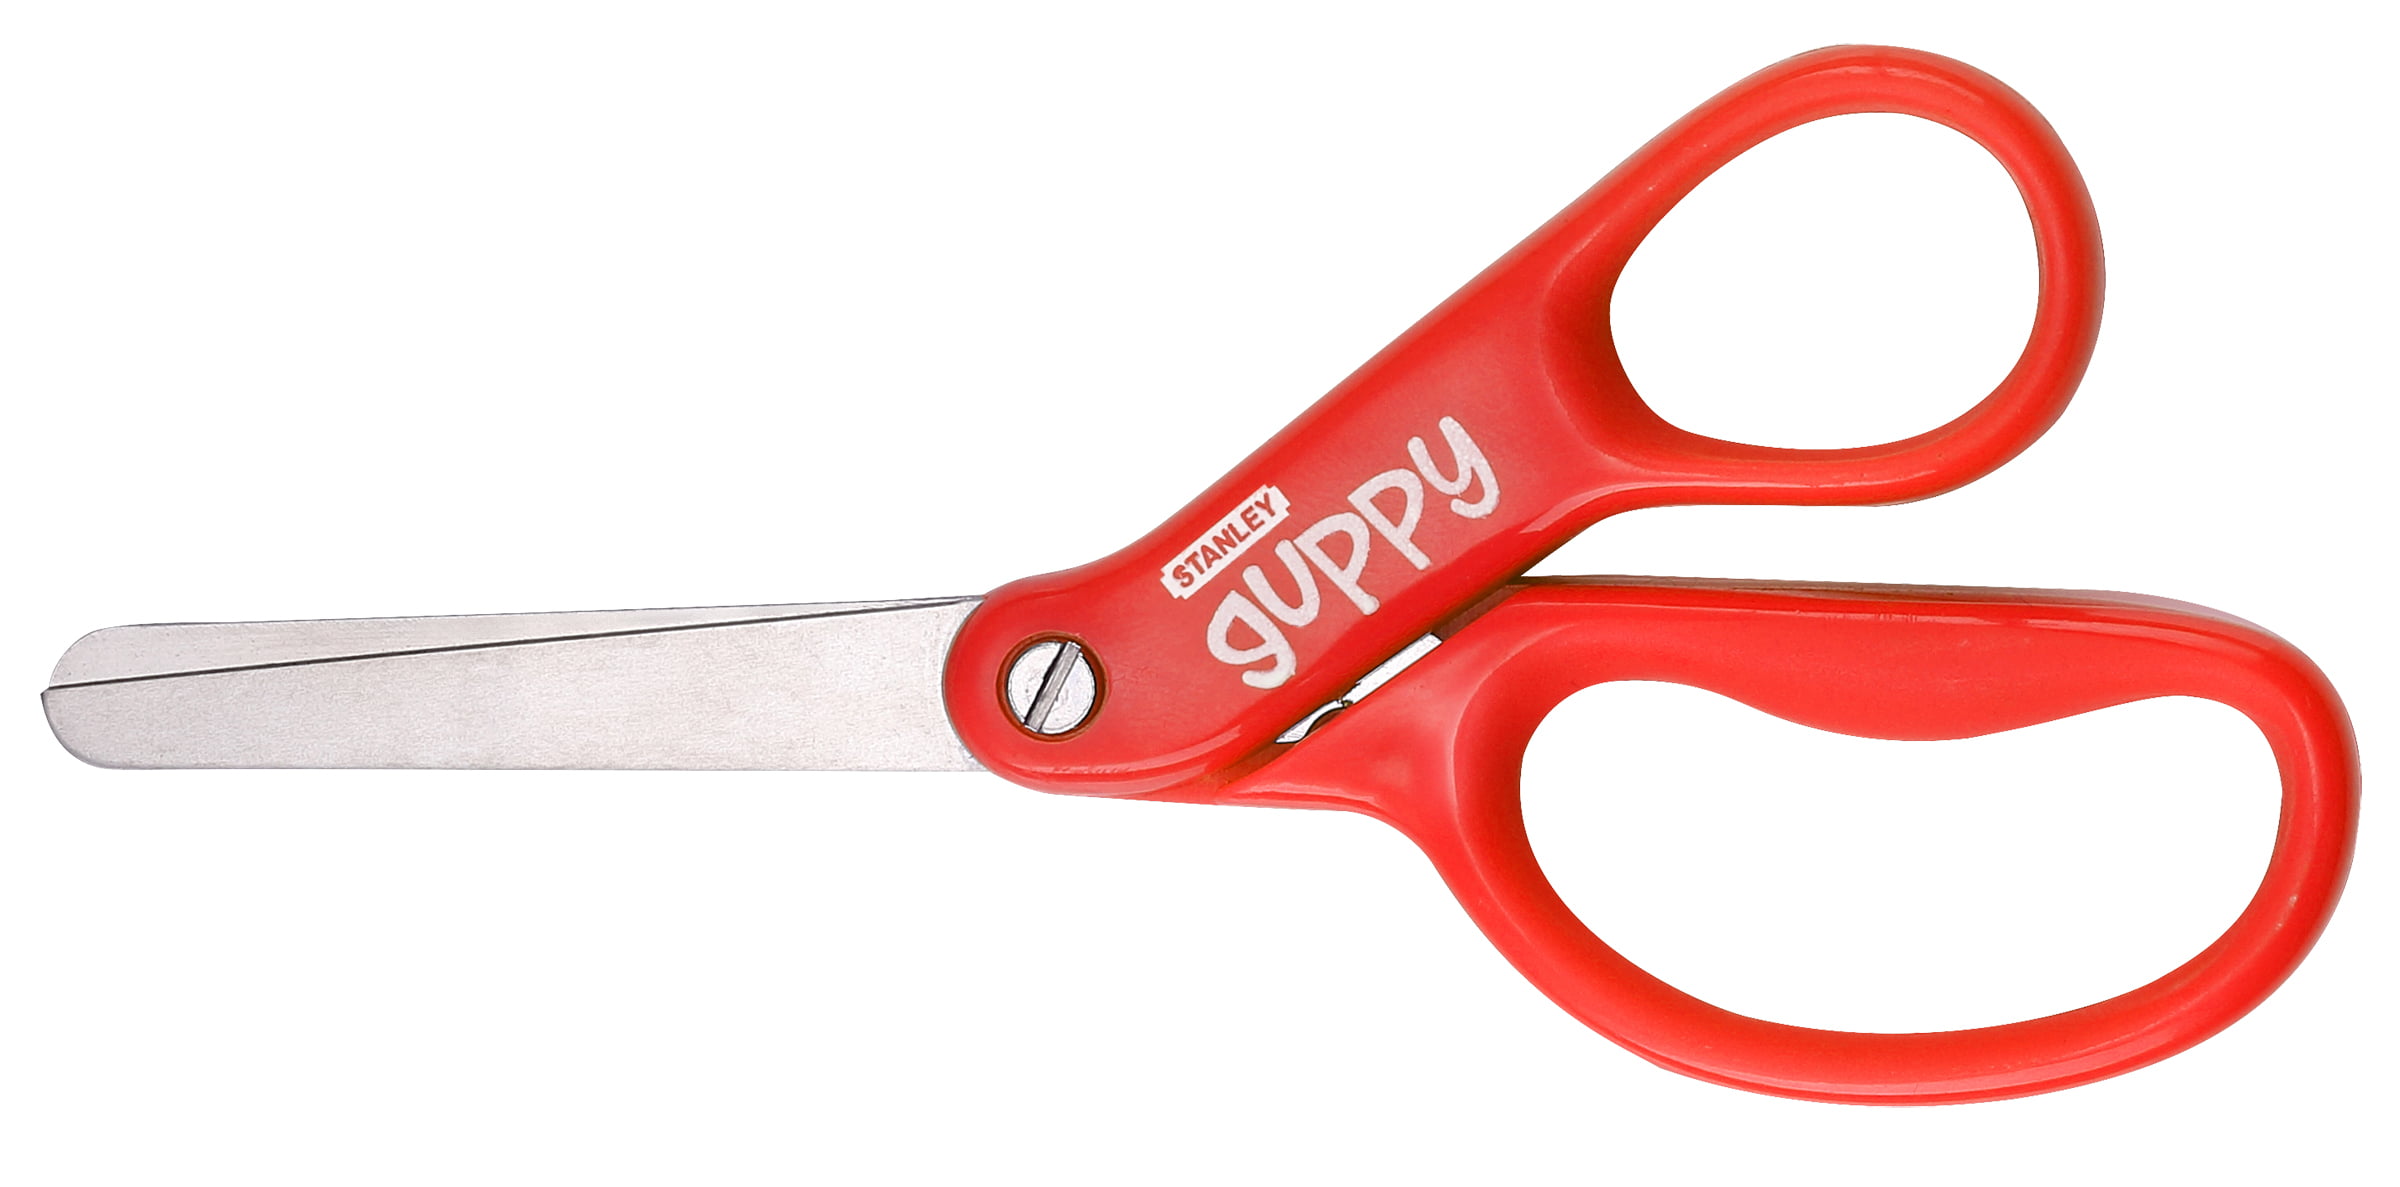 Stanley Guppy™ 5 Kids Scissors, 2-Pack